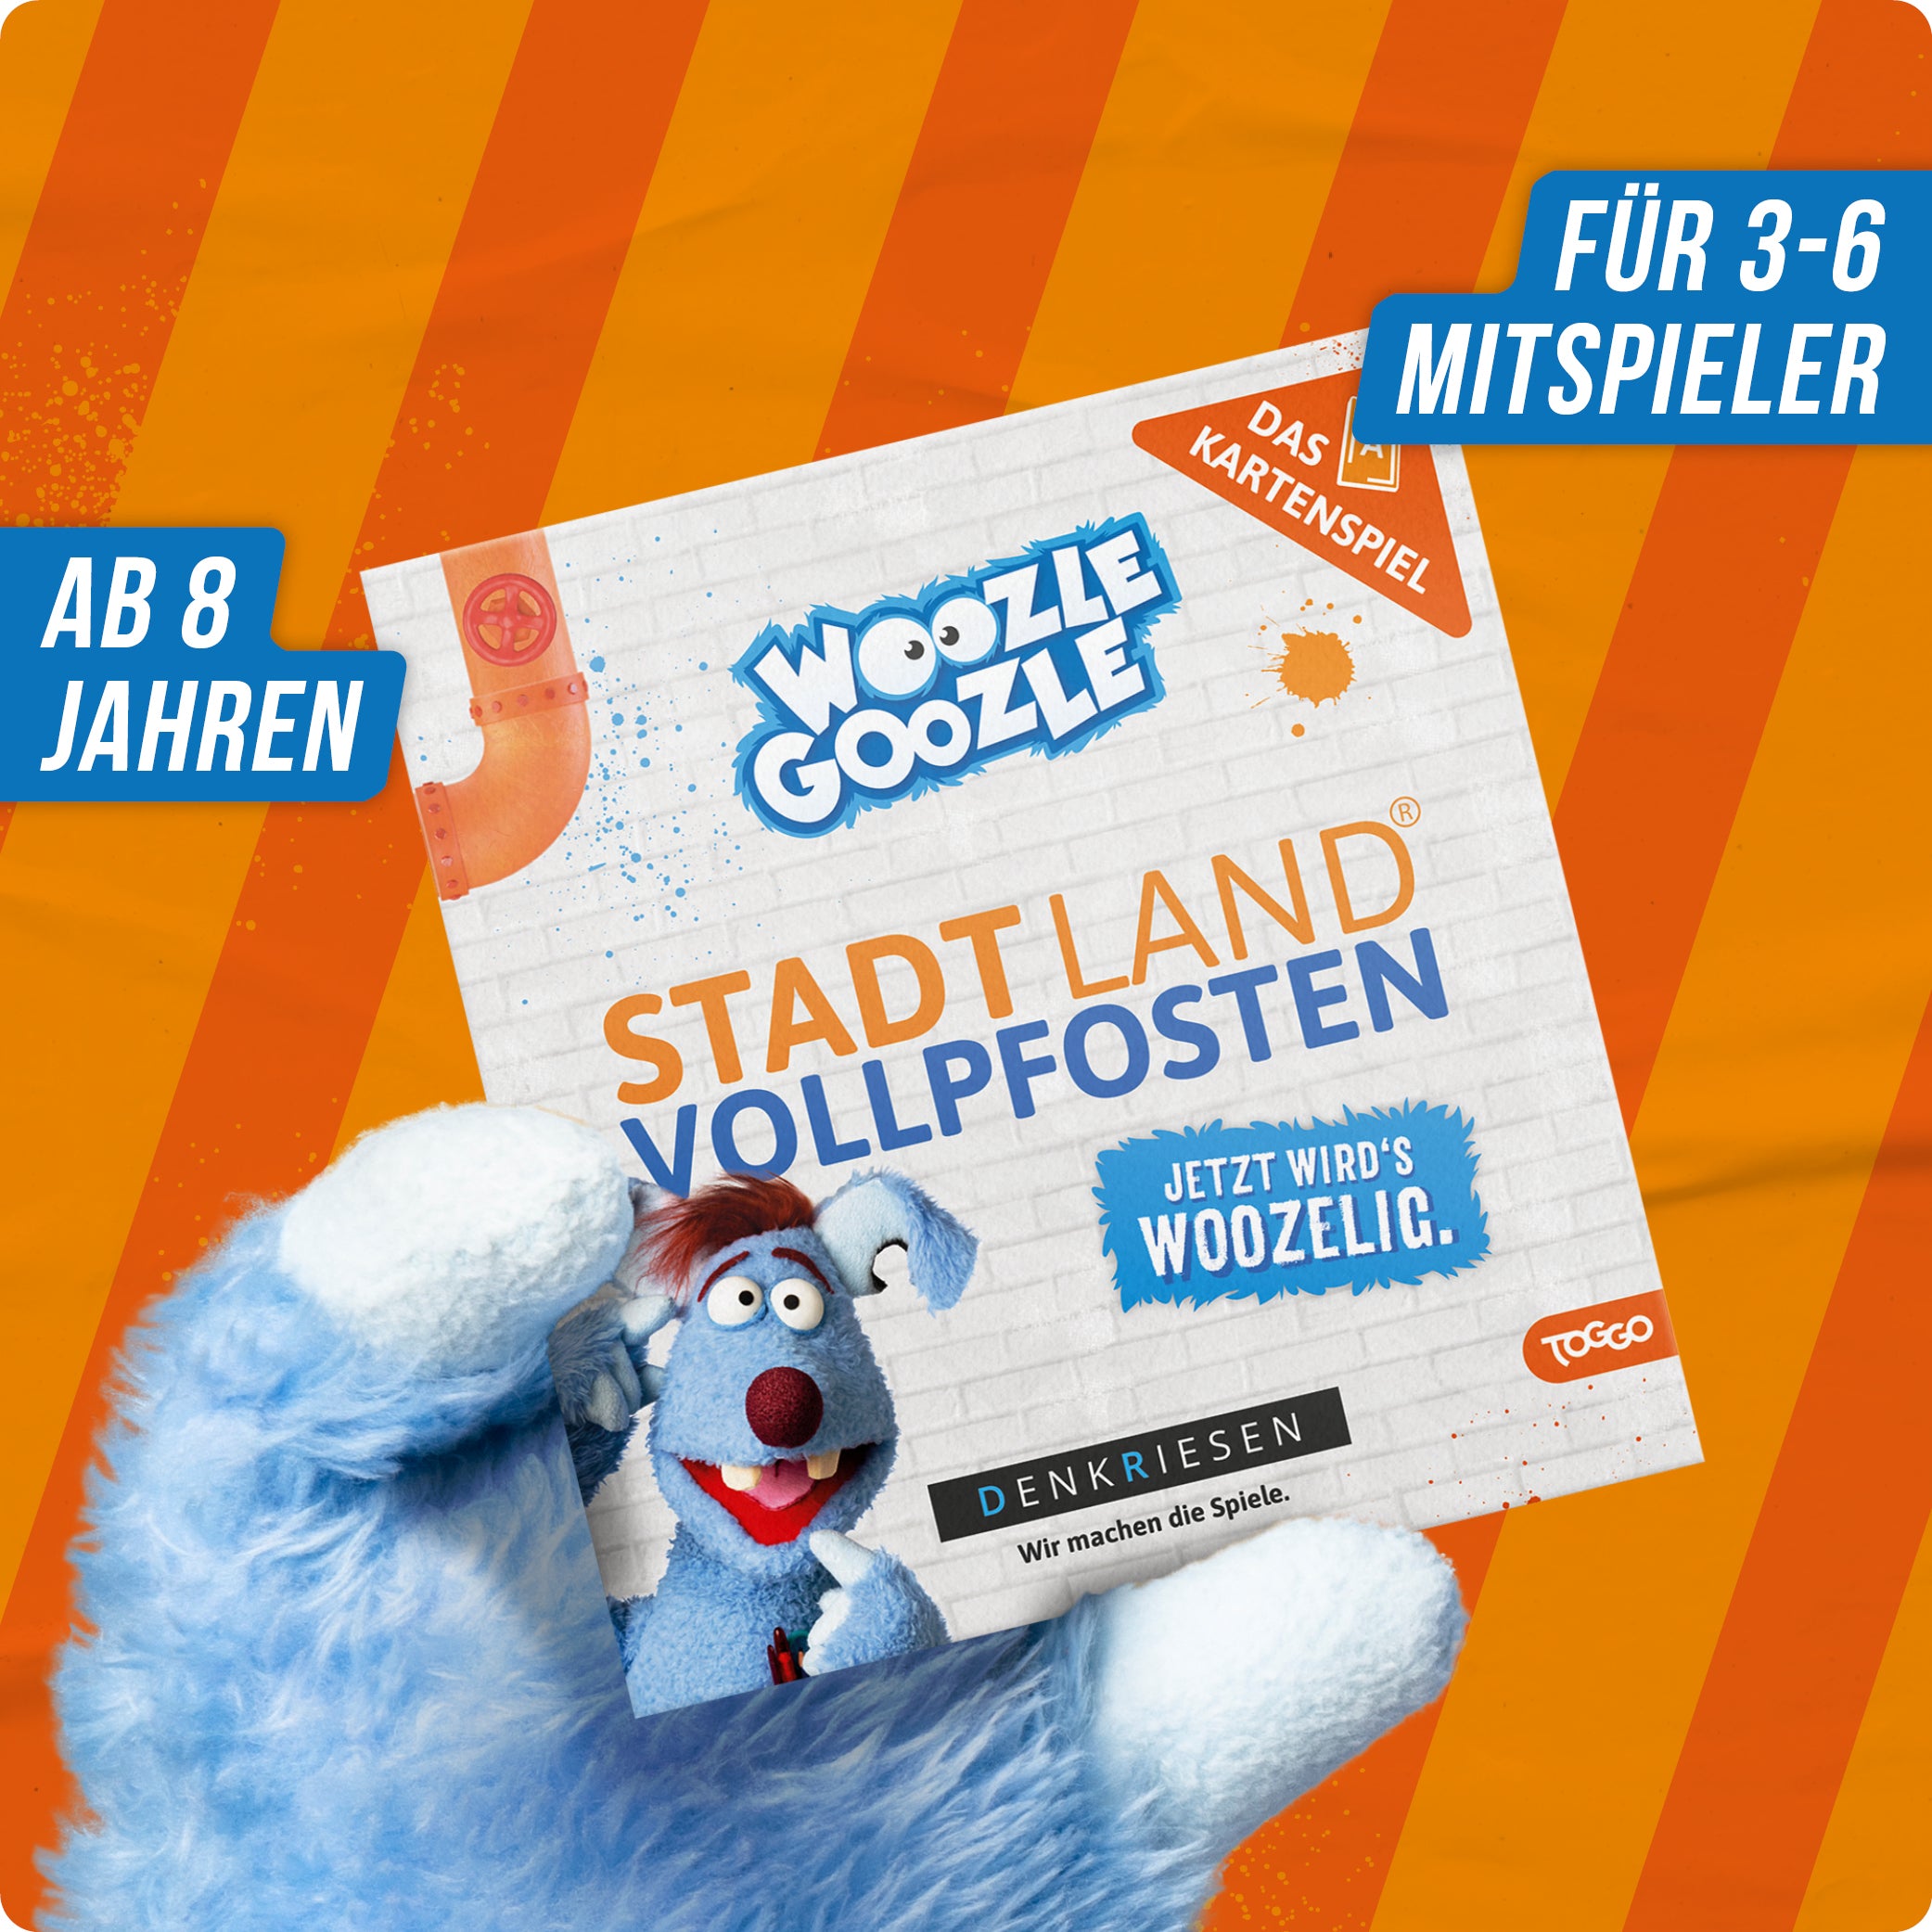 Stadt Land Vollpfosten® Woozle Goozle Edition – "Jetzt wird's woozelig." | Das Kartenspiel